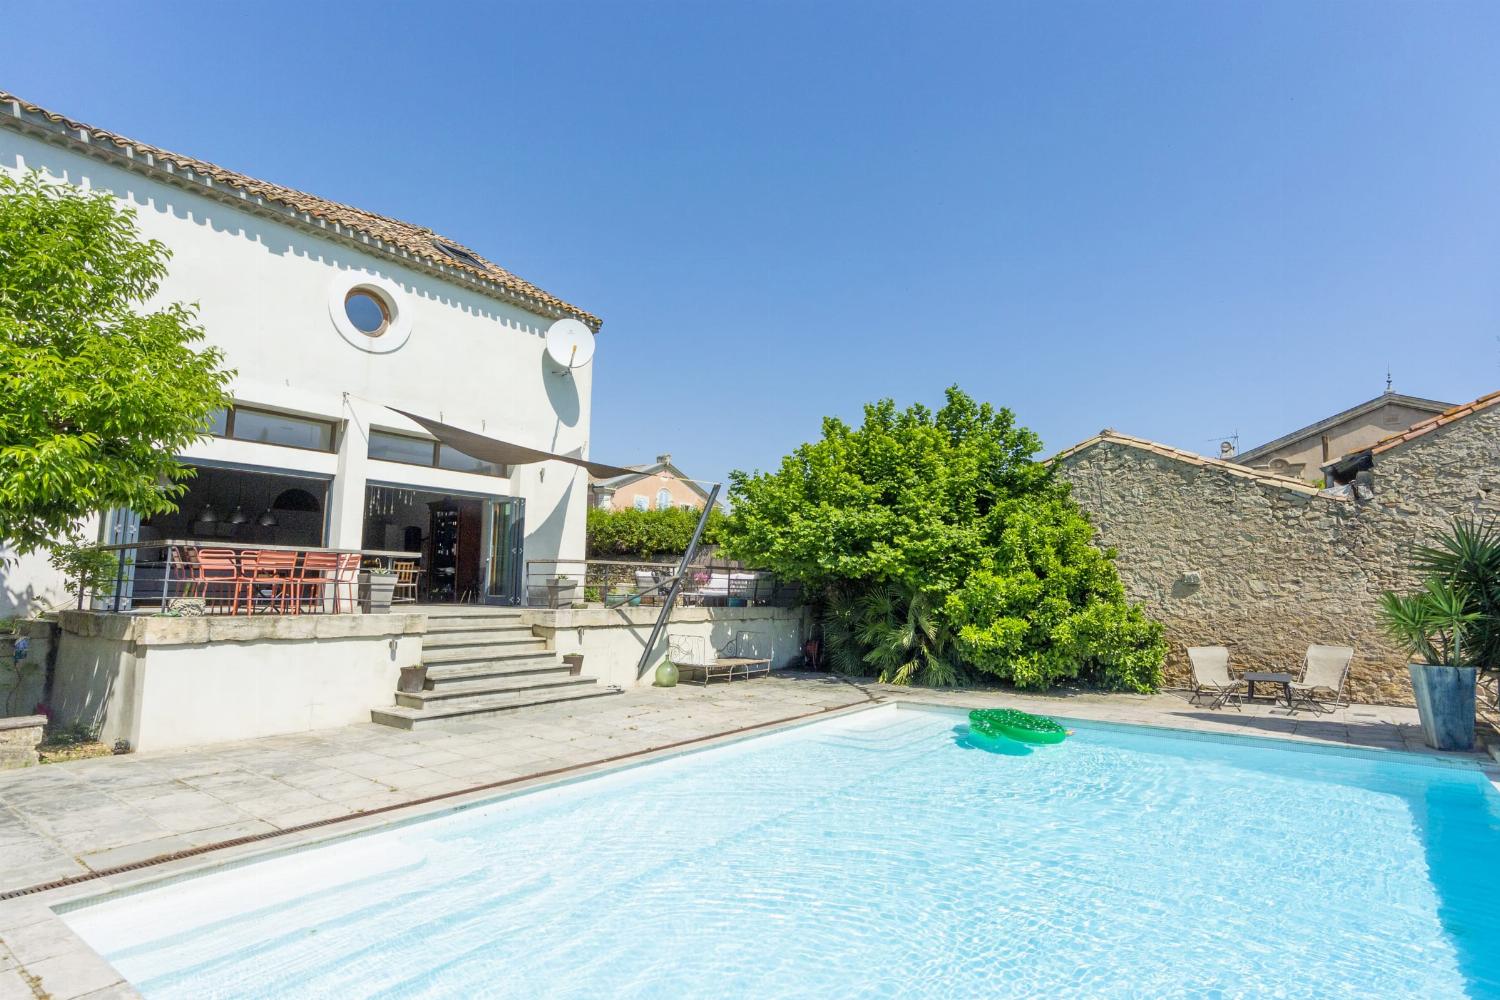 Maison de vacances dans le sud de la France avec piscine privée à débordement